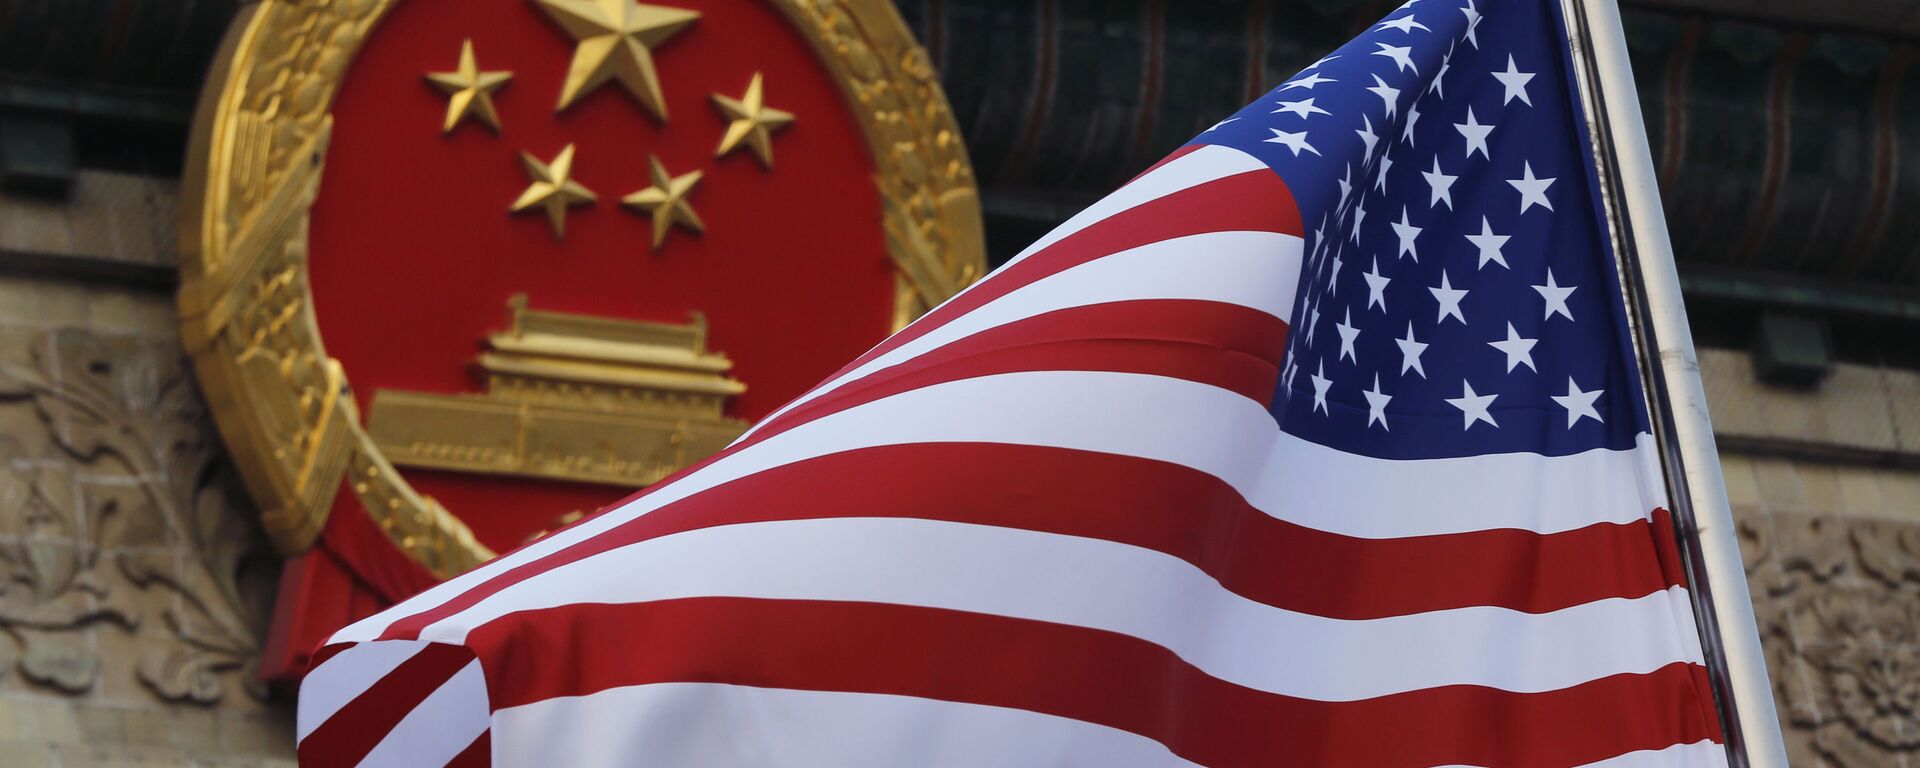 Флаг США на фоне эмблемы Китая в Пекине. Архивное фото - Sputnik Южная Осетия, 1920, 30.03.2021